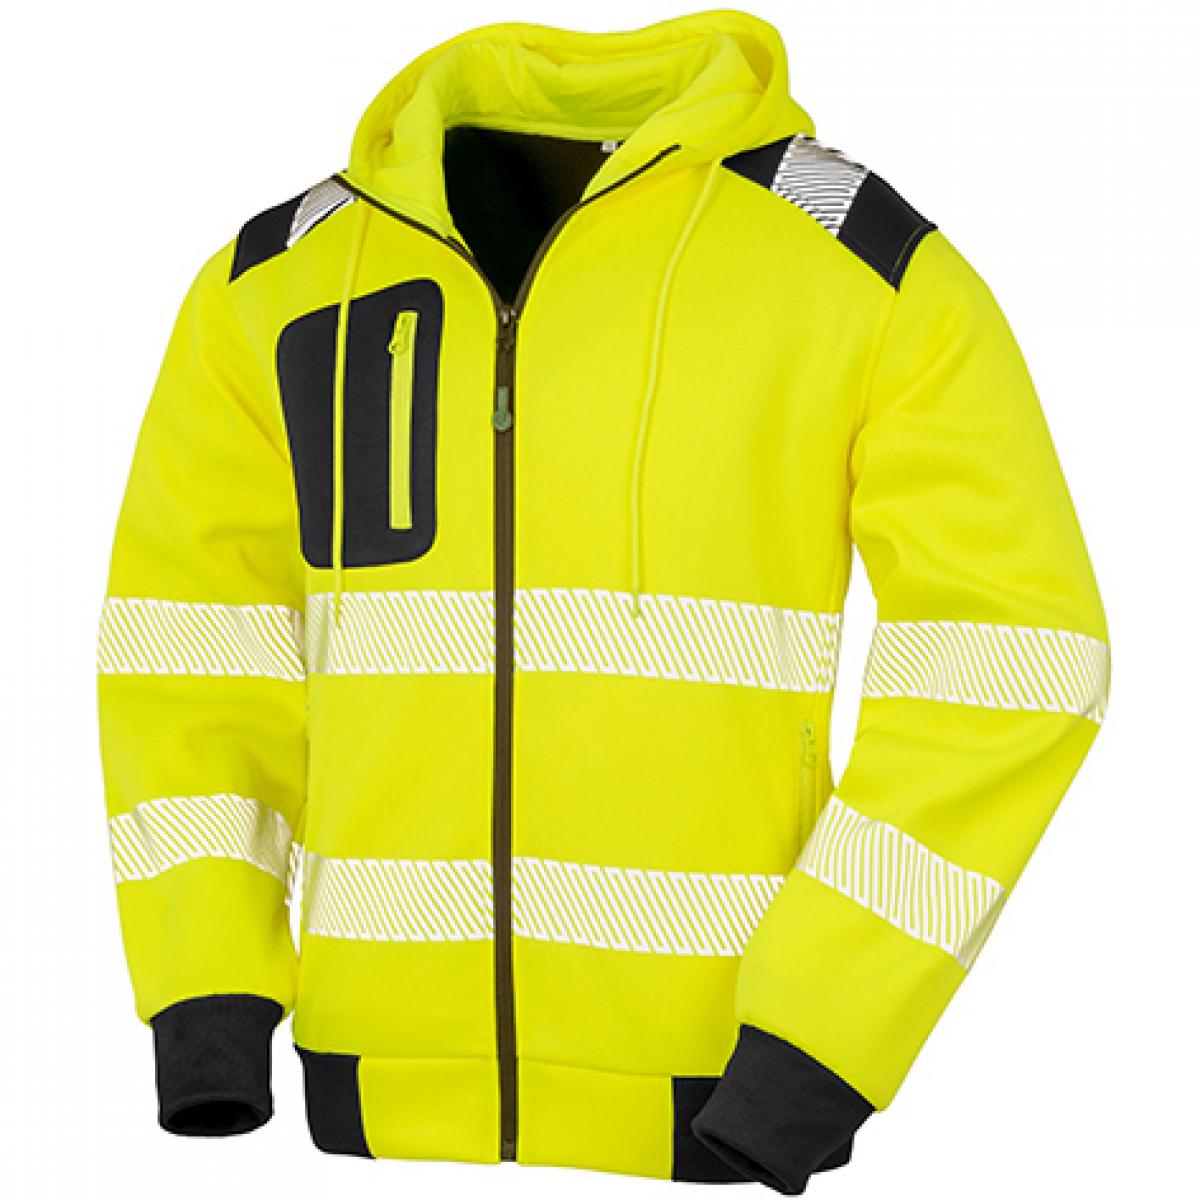 Hersteller: Result Genuine Recycled Herstellernummer: R503X Artikelbezeichnung: Recycled Robust Safety Hoody - Sicherheitsjacke mit Kapuze Farbe: Fluorescent Yellow/Black